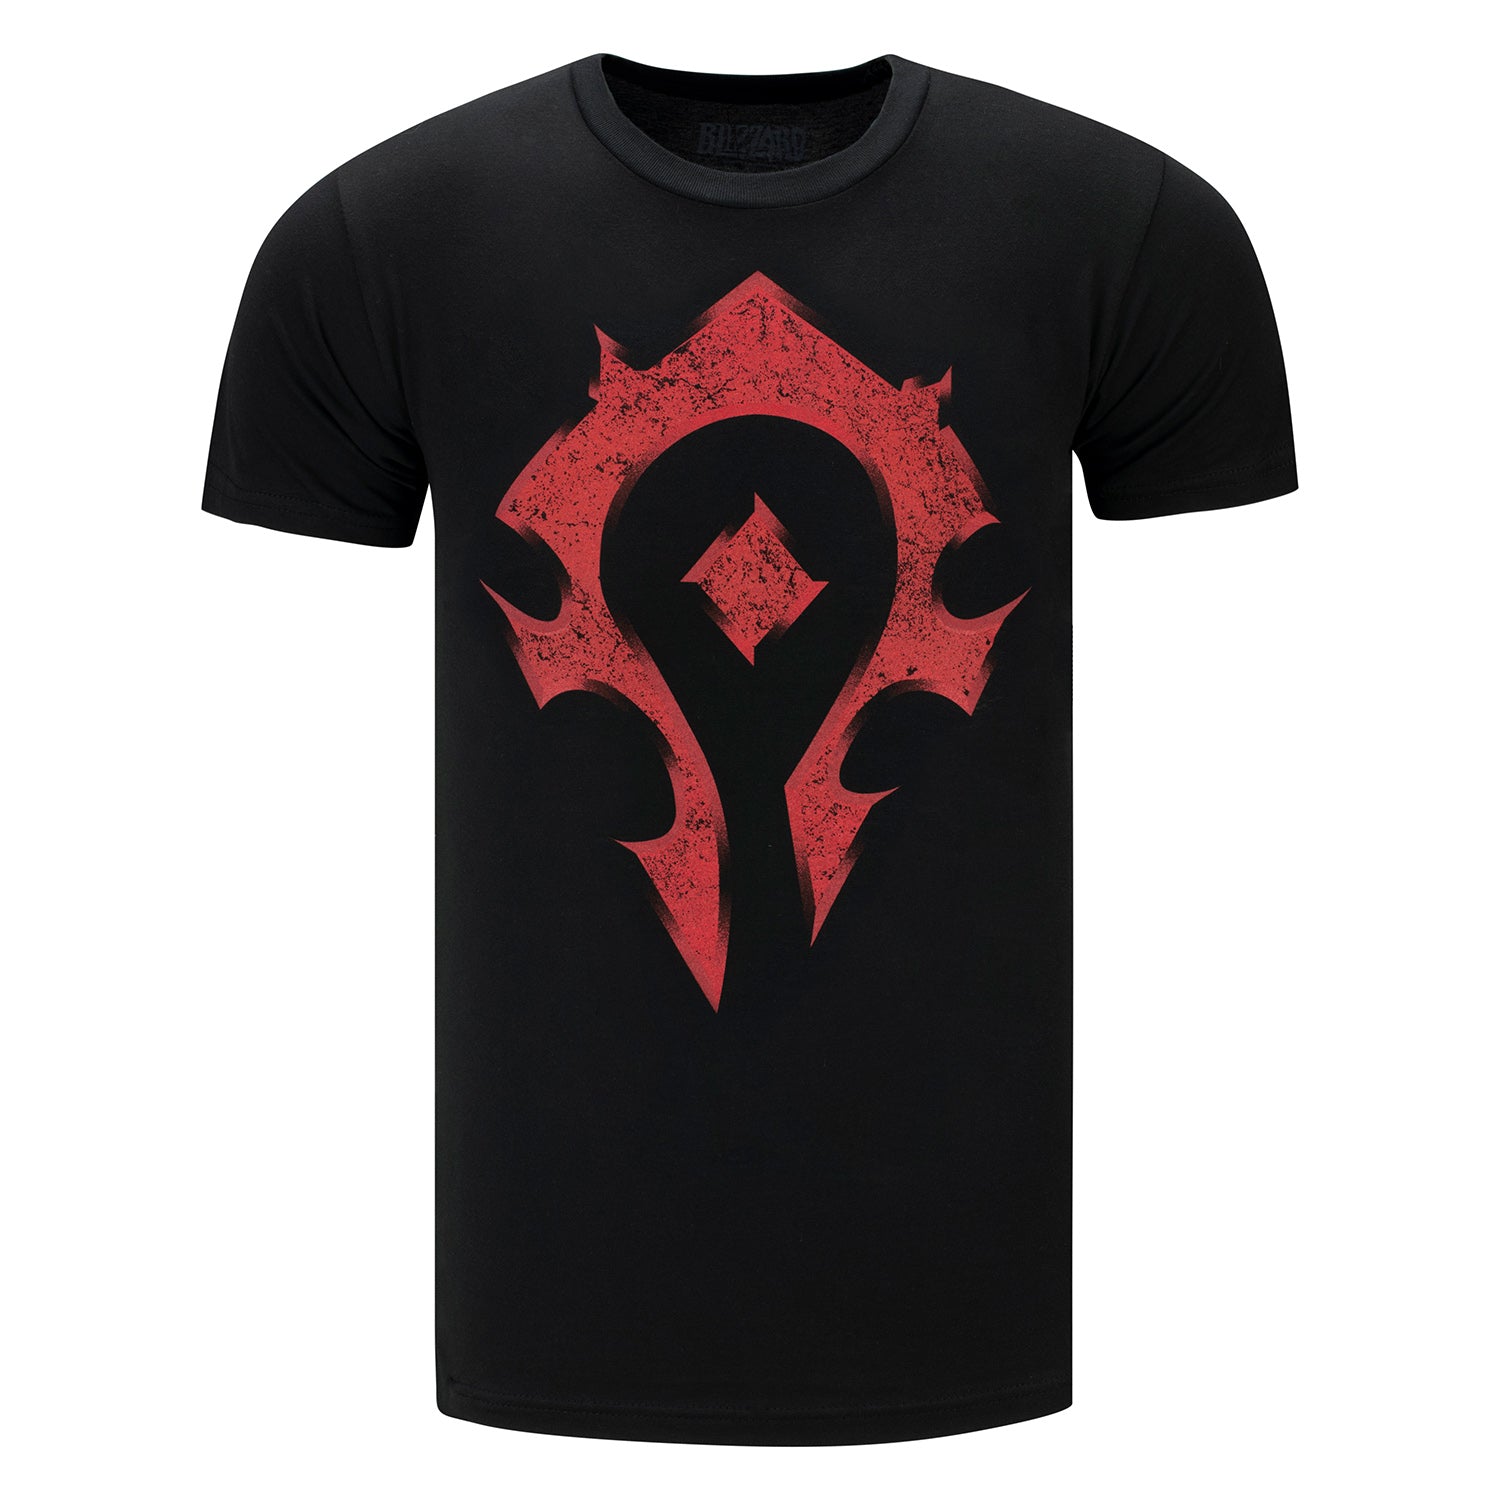 World of Warcraft J!NX Black Danger Horde T-Shirt - Front View